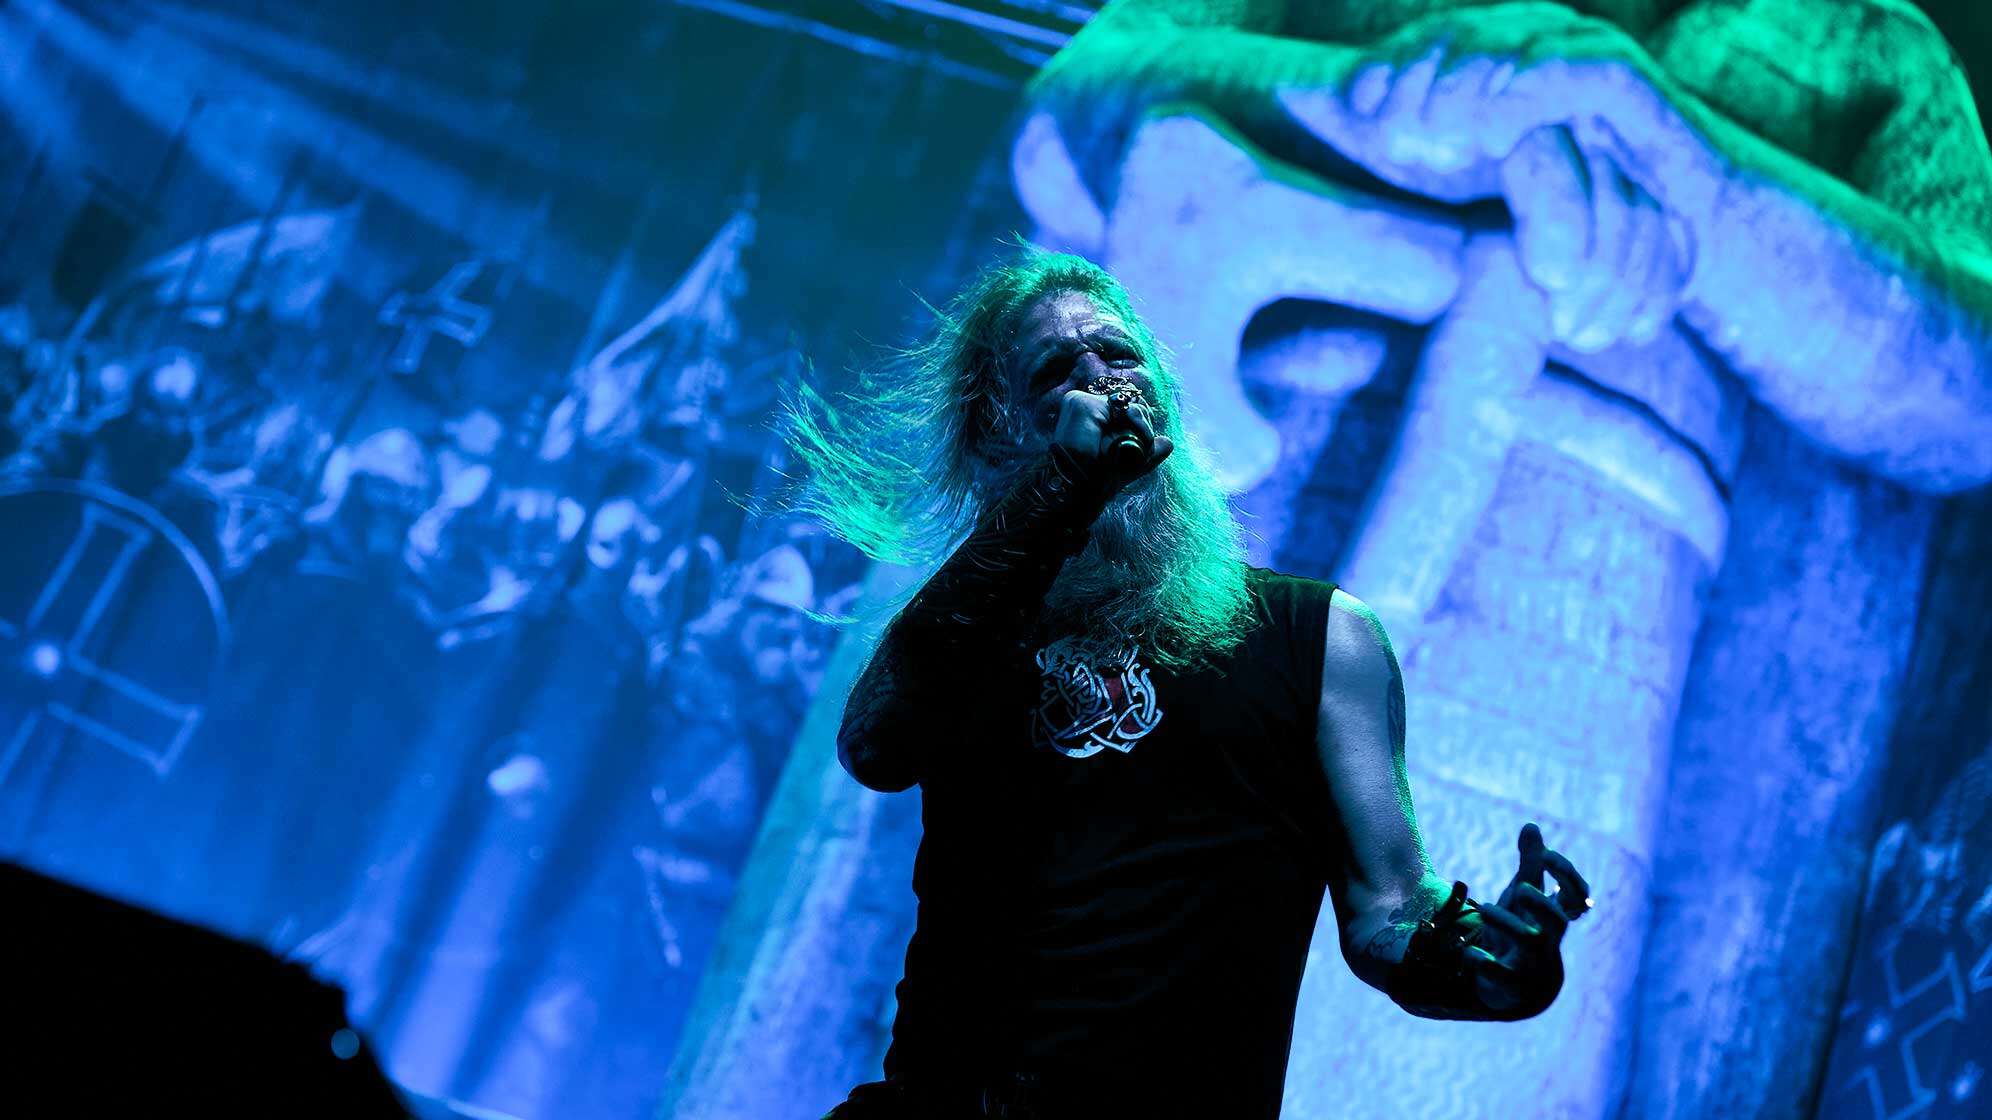 Amon Amarth-Frontmann Johann Hegg bei einer Performance auf der Bühne.